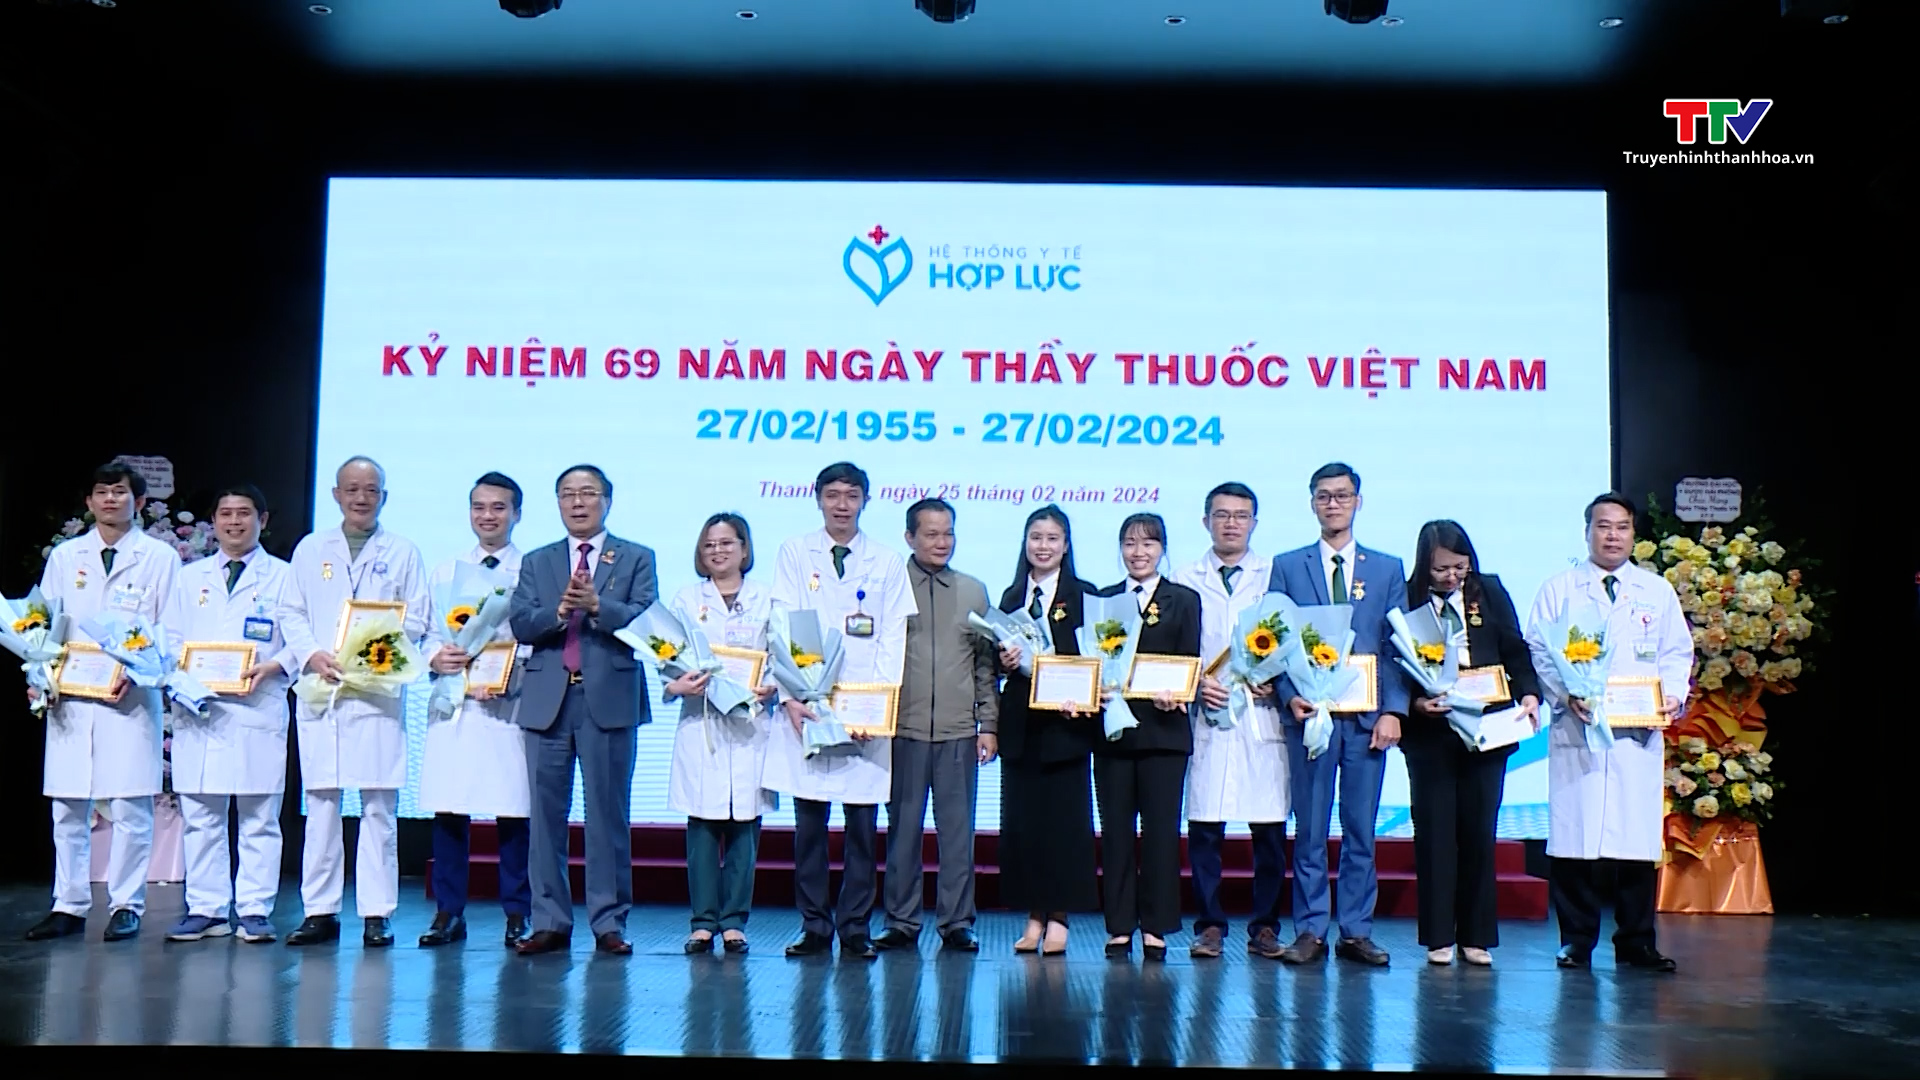 Tổng Công ty Cổ phần Hợp Lực tổ chức các hoạt động kỷ niệm ngày Thầy thuốc Việt Nam- Ảnh 1.